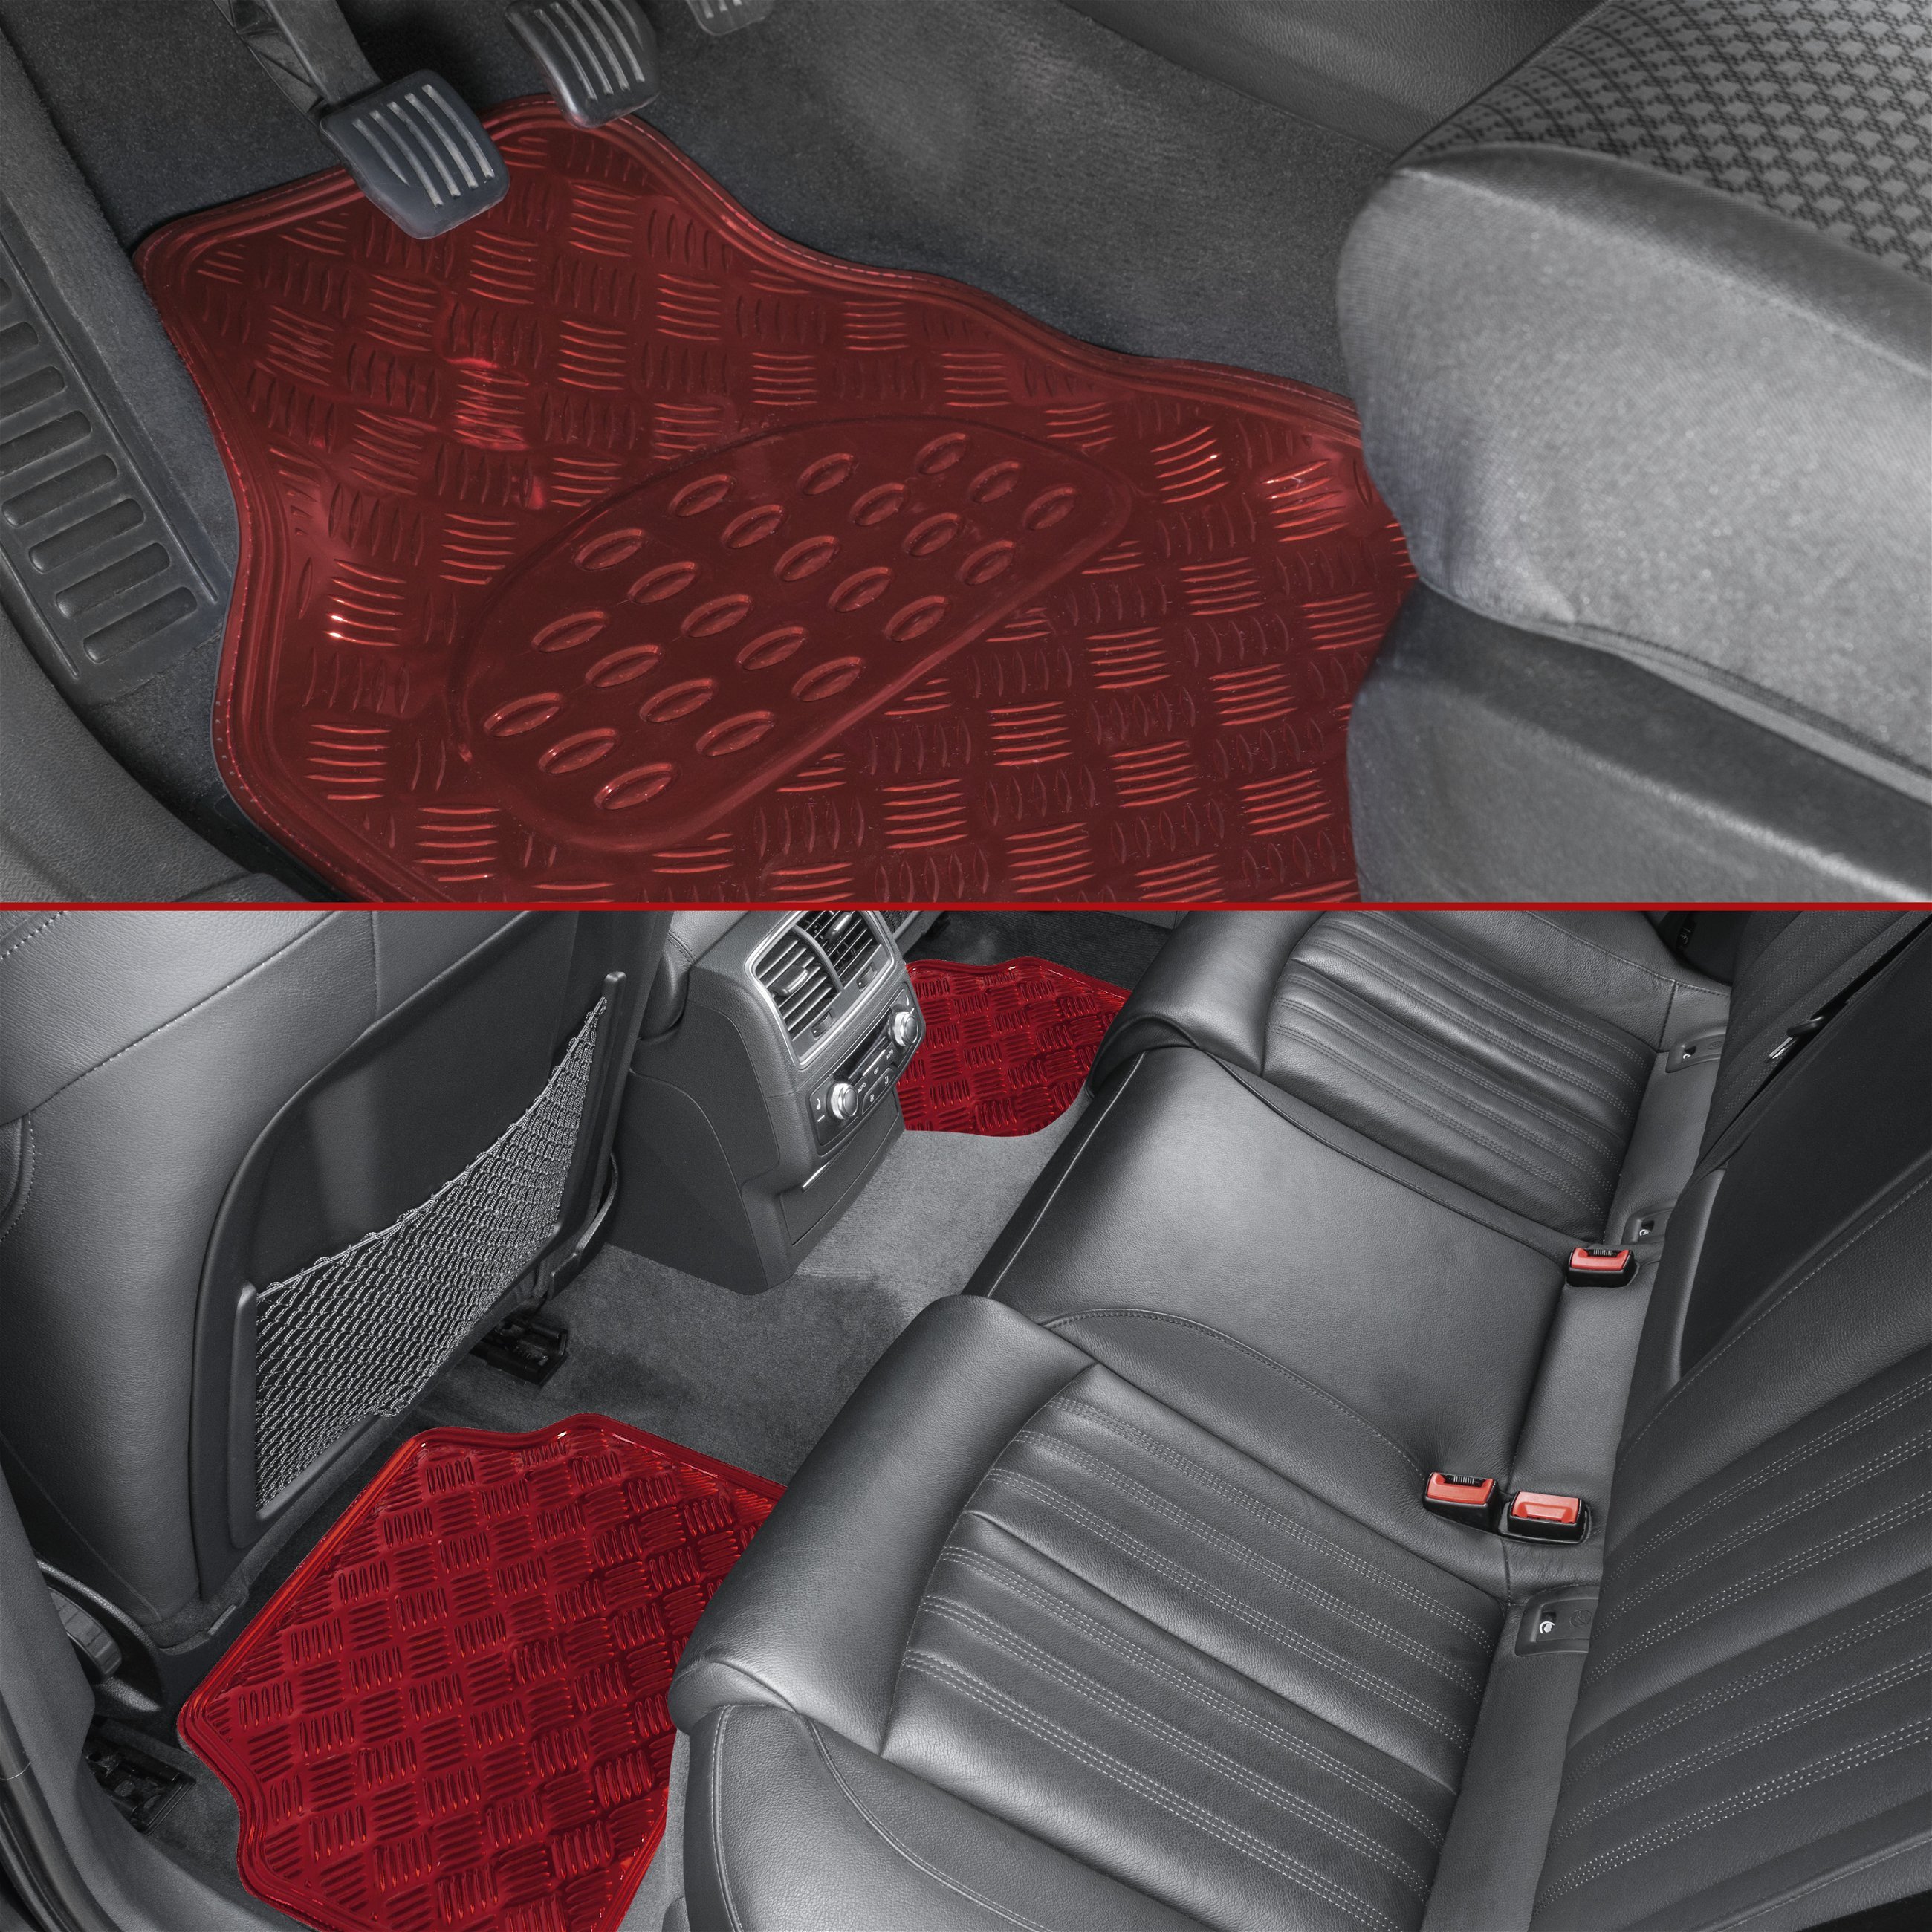 Car Rubber matss Metallic checker plate look red maxi